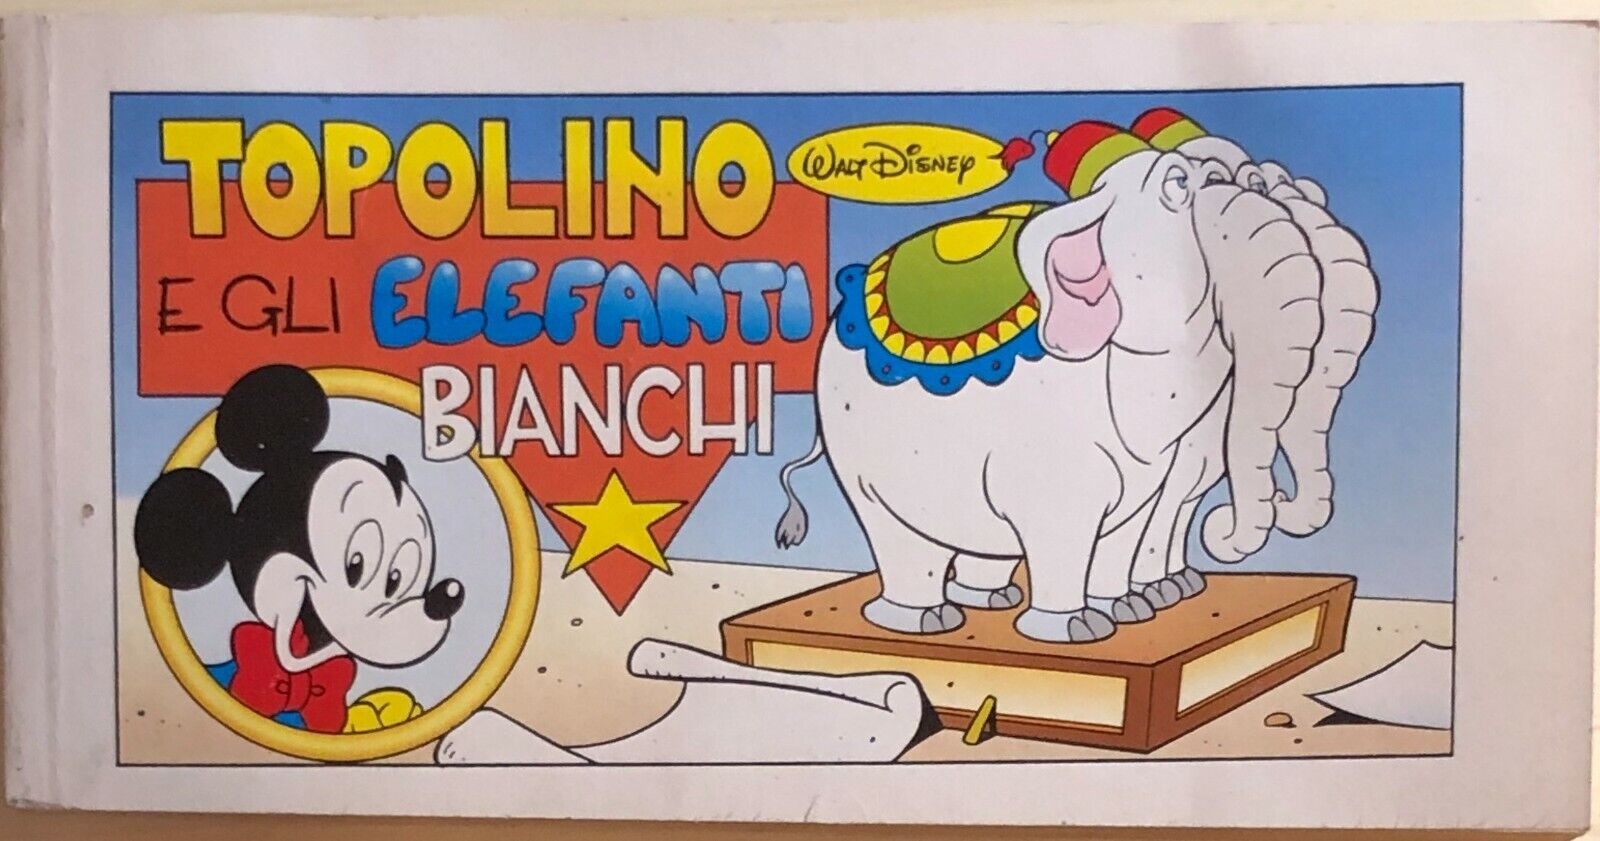 Topolino e gli elefanti bianchi di Disney, 1993, Disney